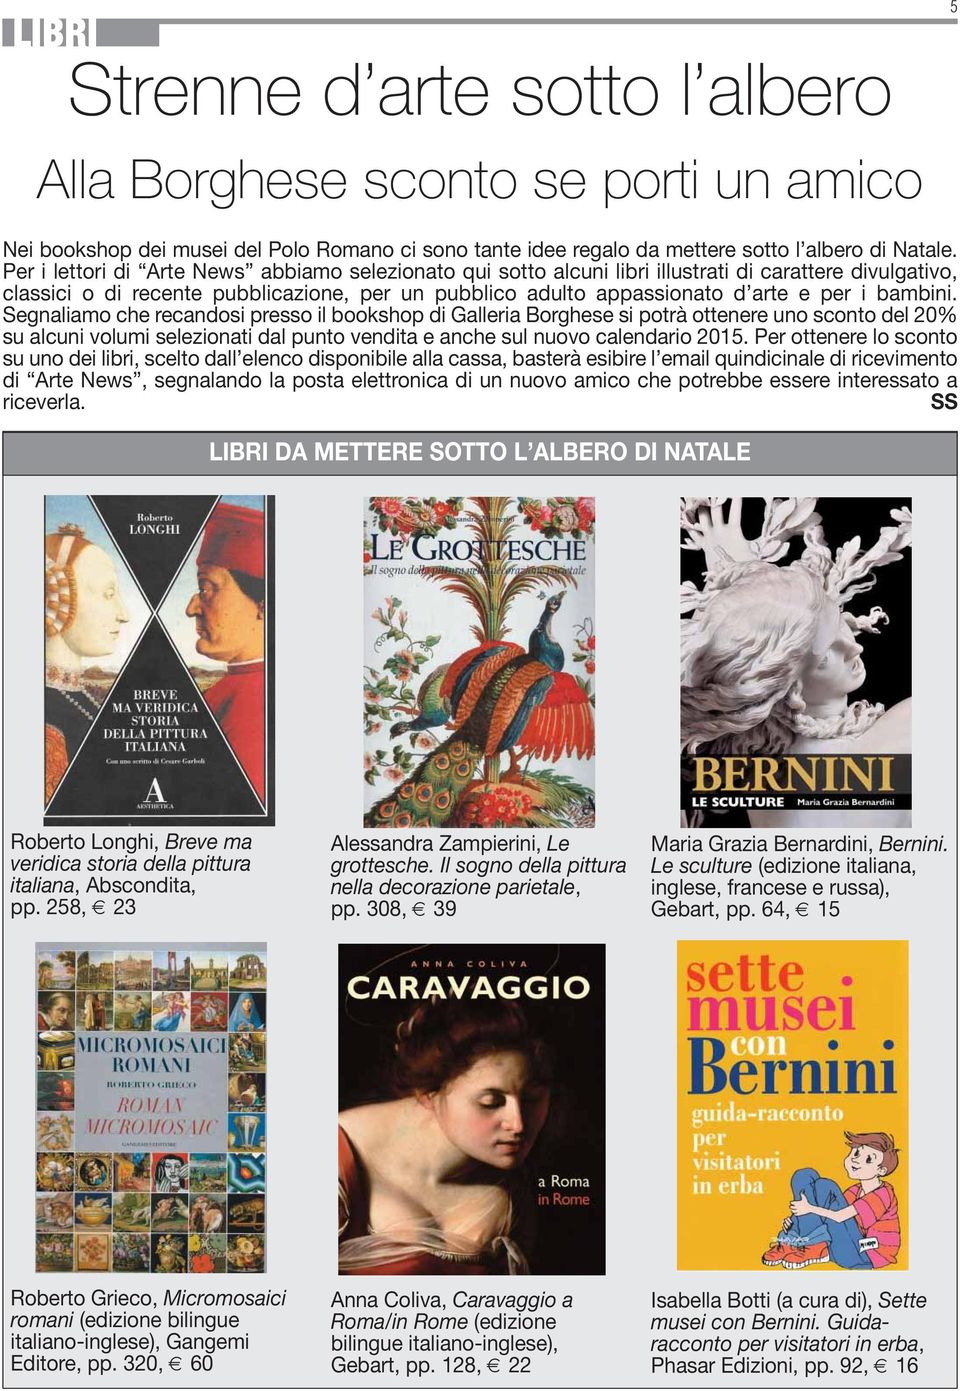 bambini. Segnaliamo che recandosi presso il bookshop di Galleria Borghese si potrà ottenere uno sconto del 20% su alcuni volumi selezionati dal punto vendita e anche sul nuovo calendario 2015.